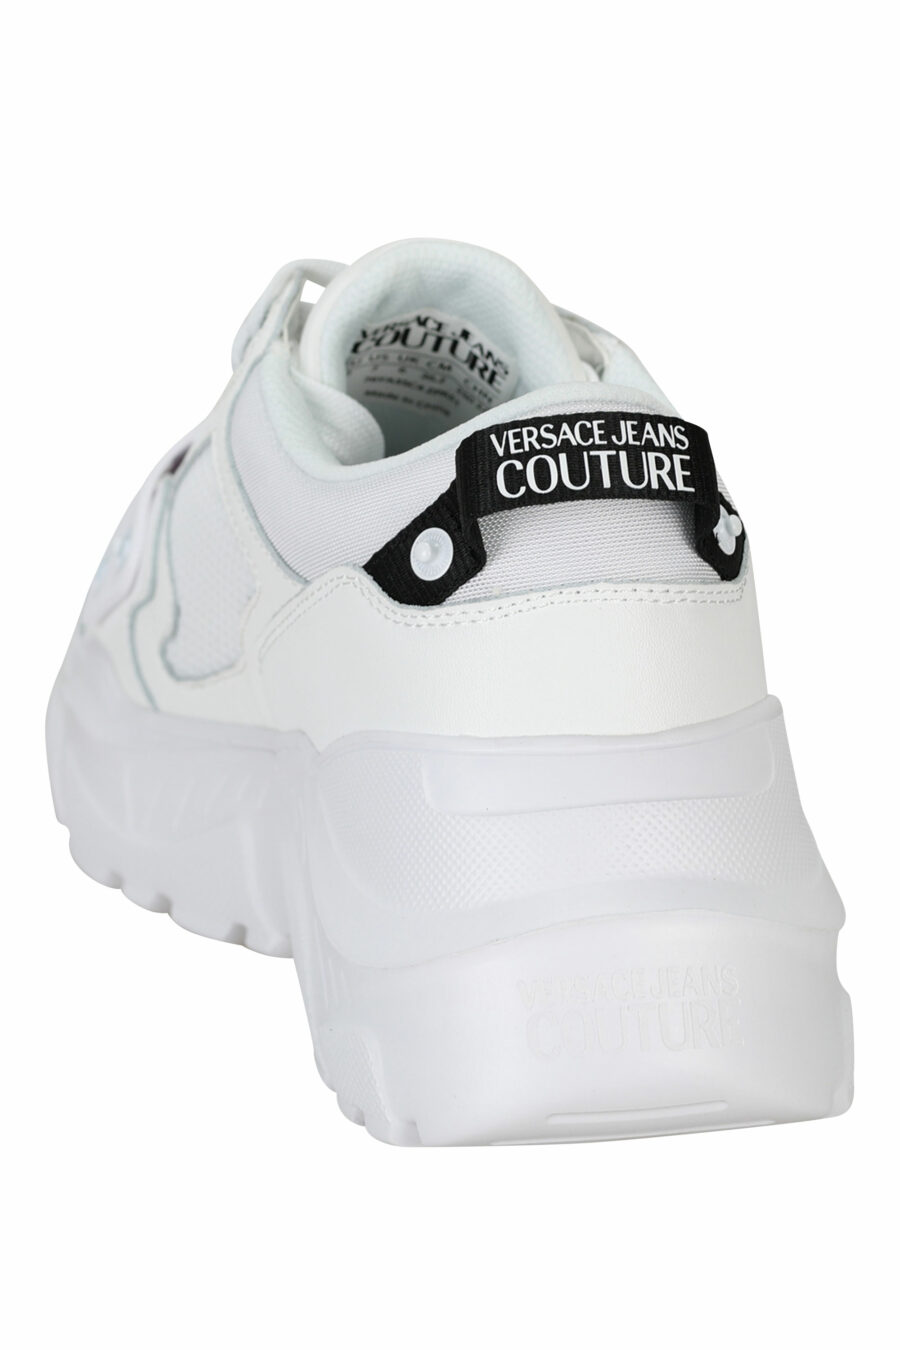 Weiße "Speedtrack"-Schuhe mit schwarzem Gummi-Mini-Logo auf der Vorderseite - 8052019604337 3